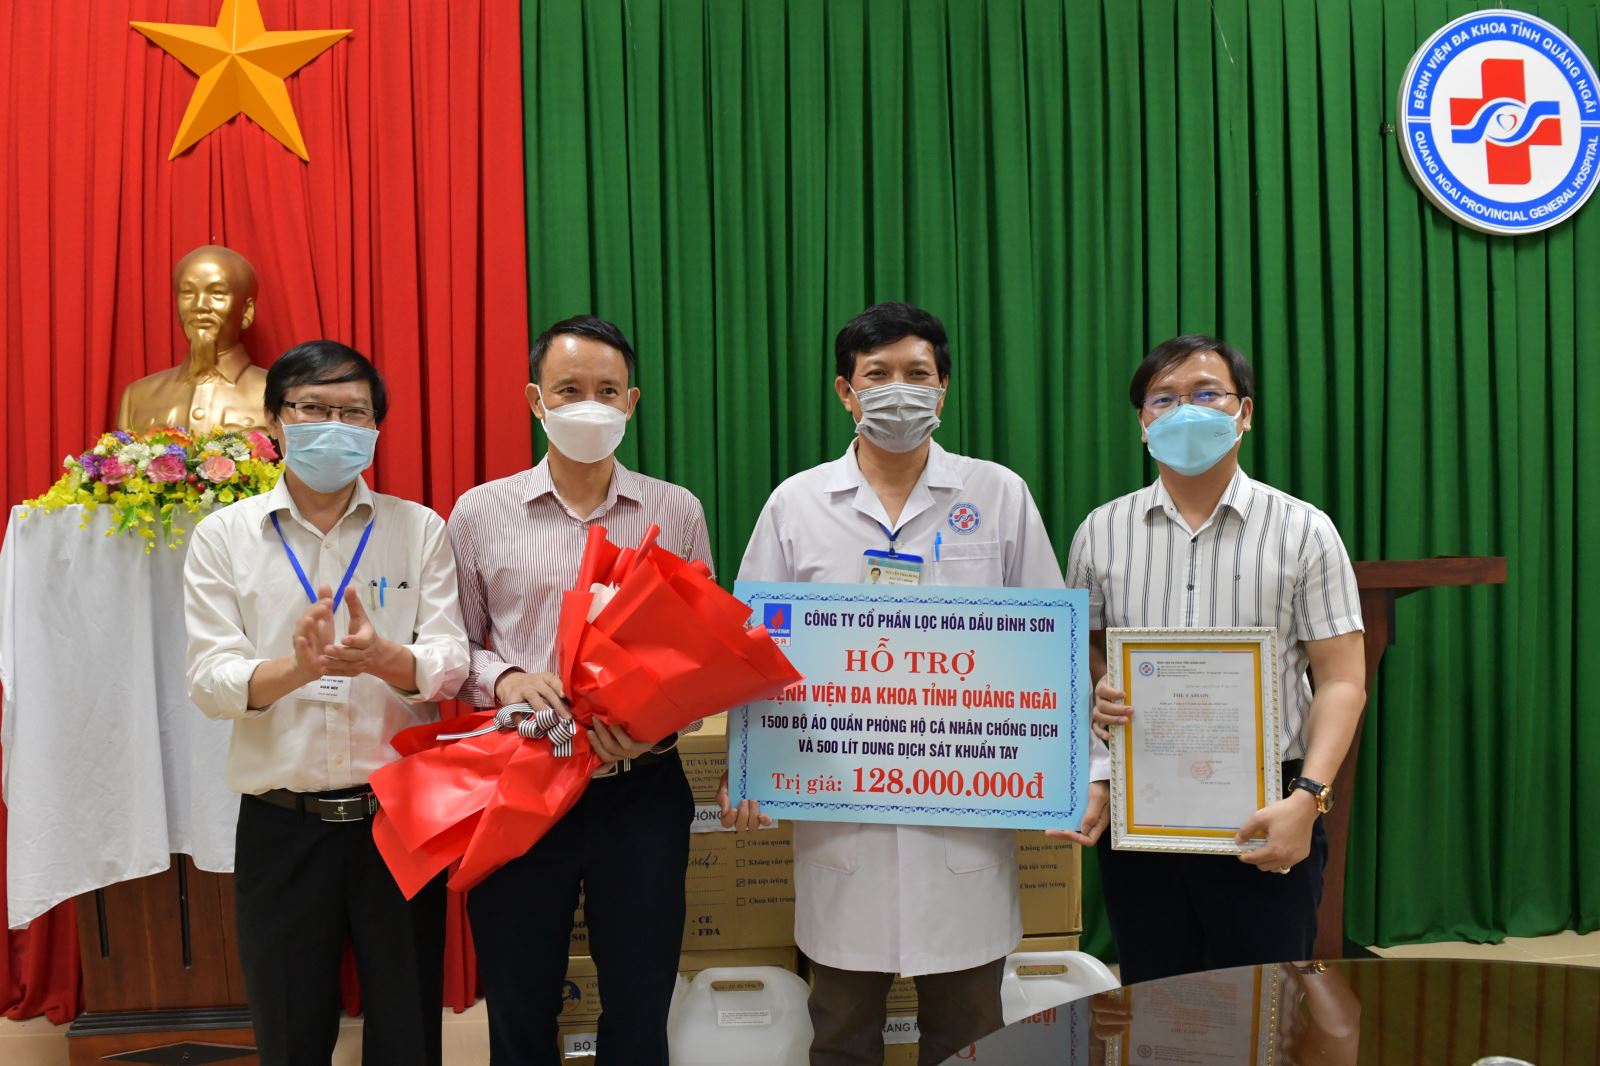 BSR hỗ trợ 128 triệu đồng cho công tác phòng, chống dịch trên địa bàn tỉnh Quảng Ngãi